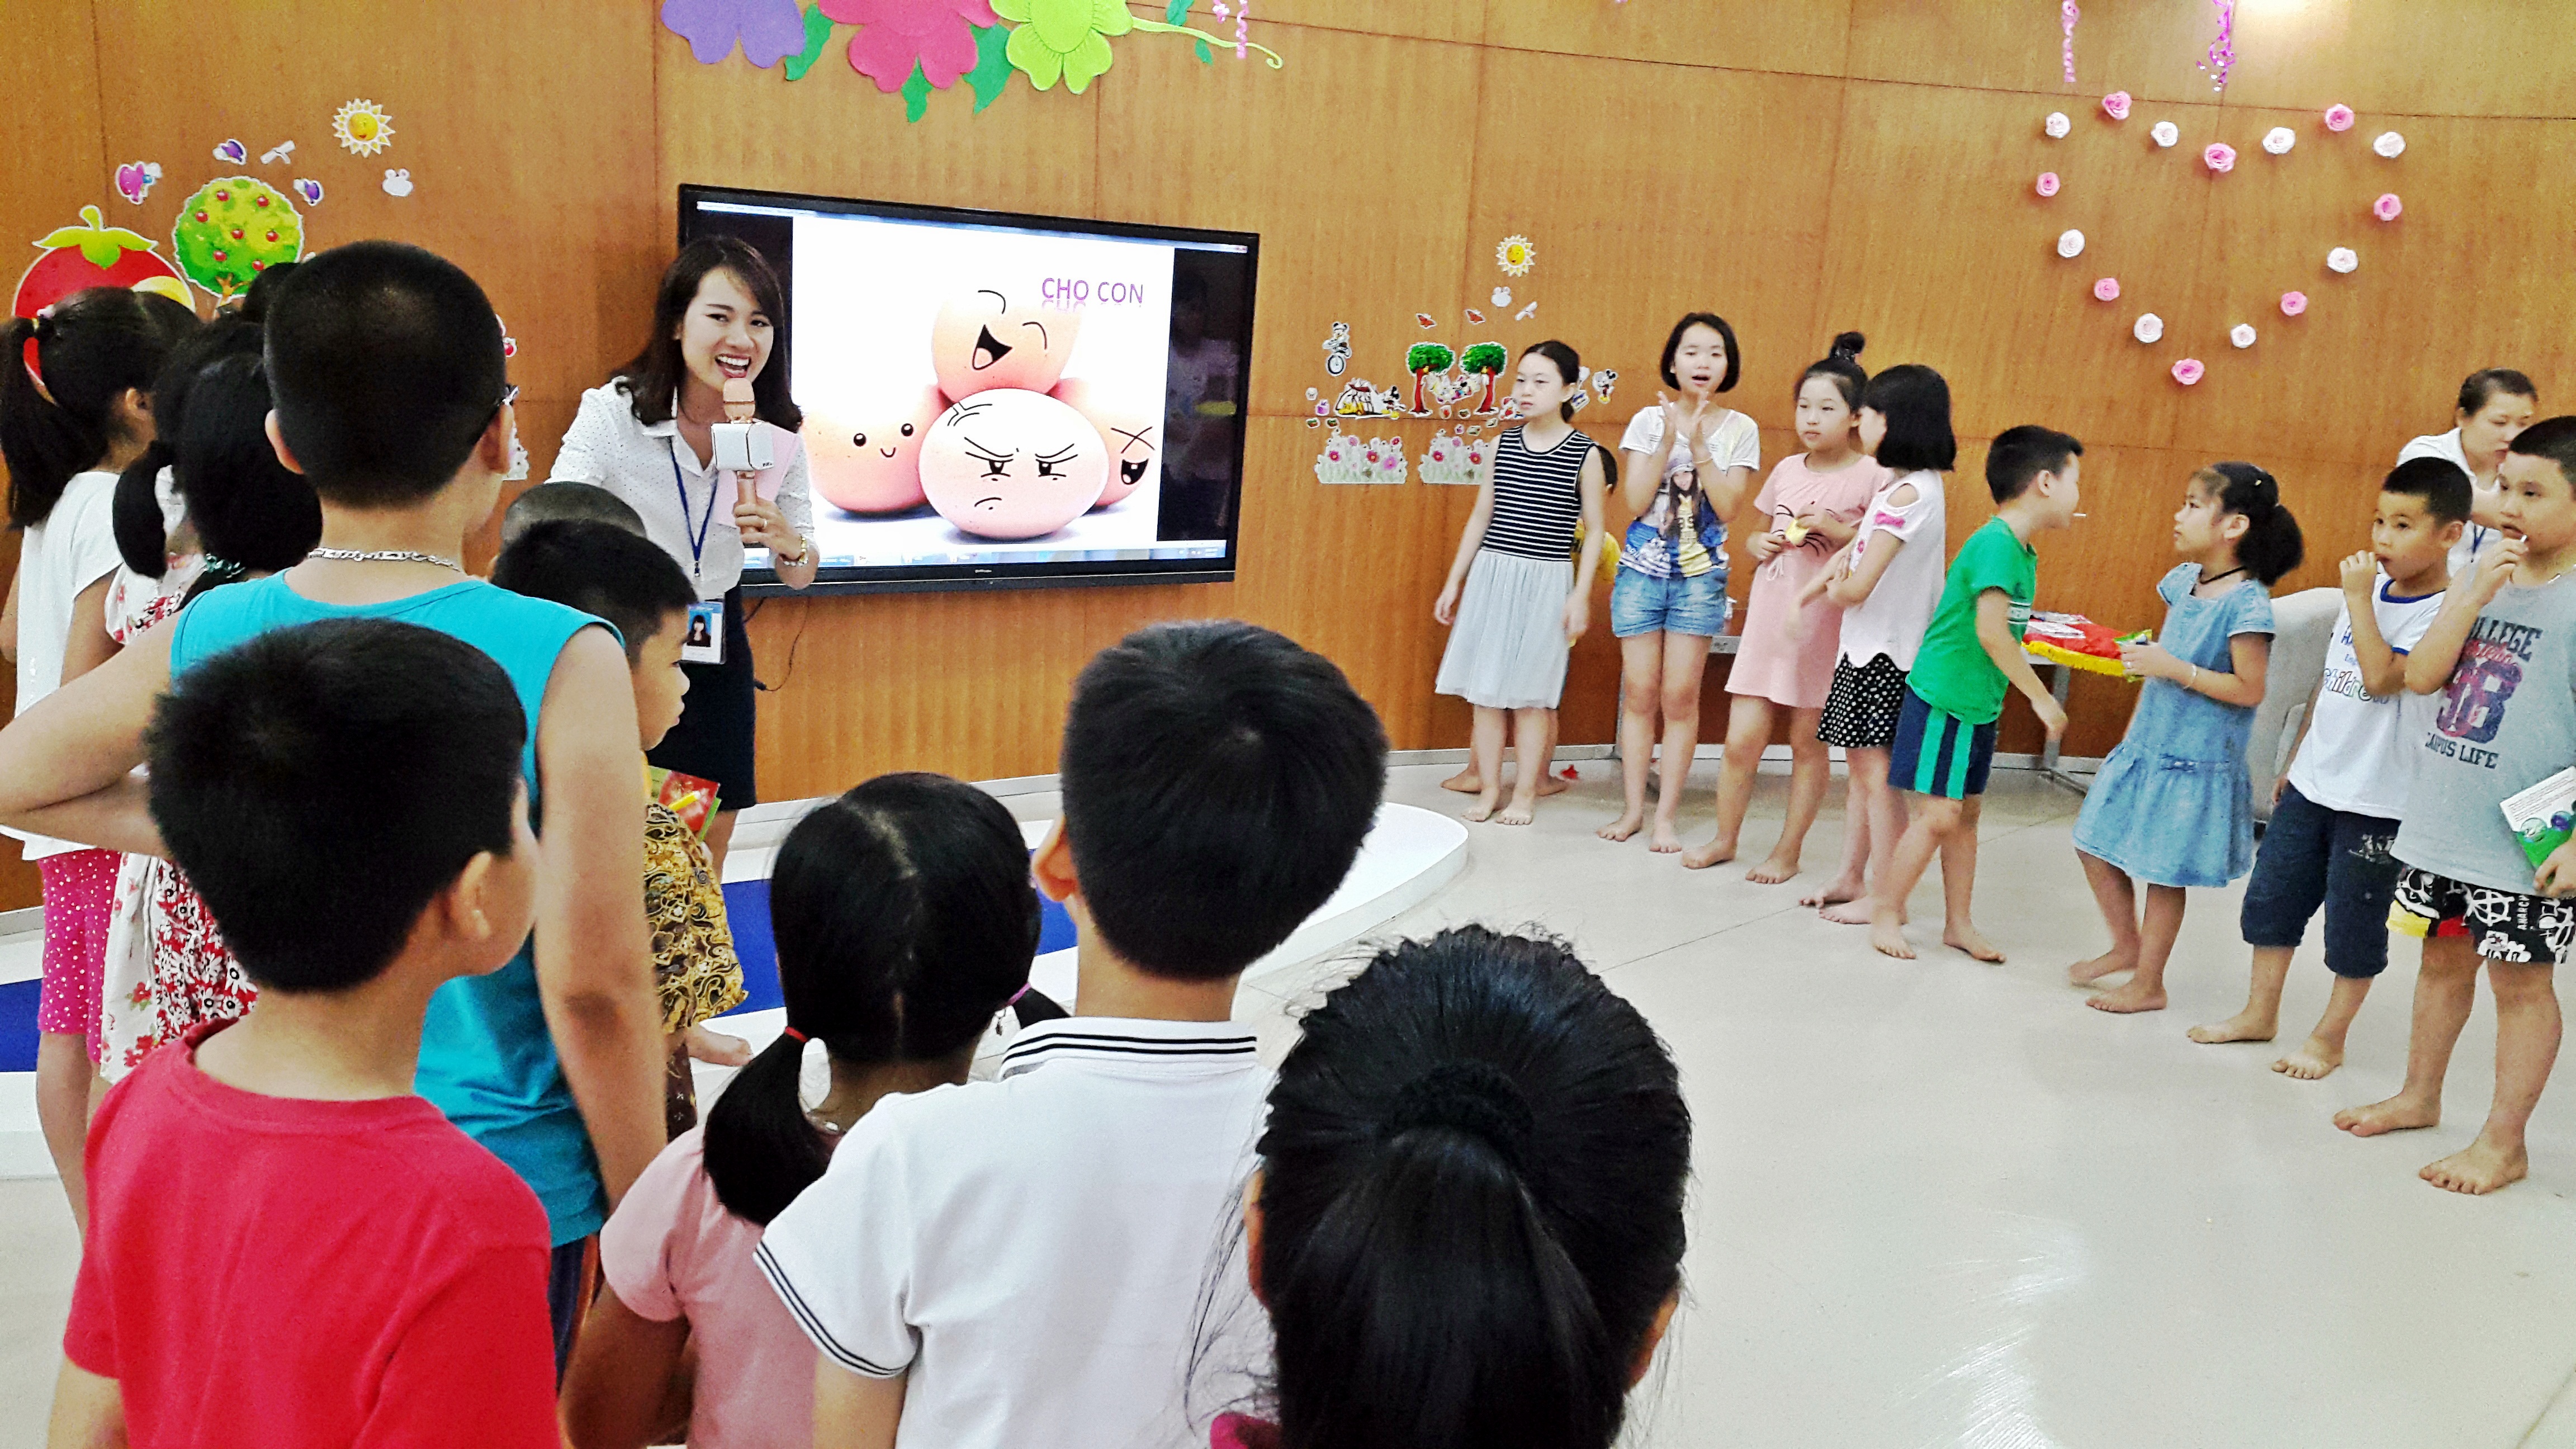 Hoạt động sinh hoạt hè tại Thư viện tỉnh Quảng Ninh 2017 - Sân chơi bổ ích dịp hè